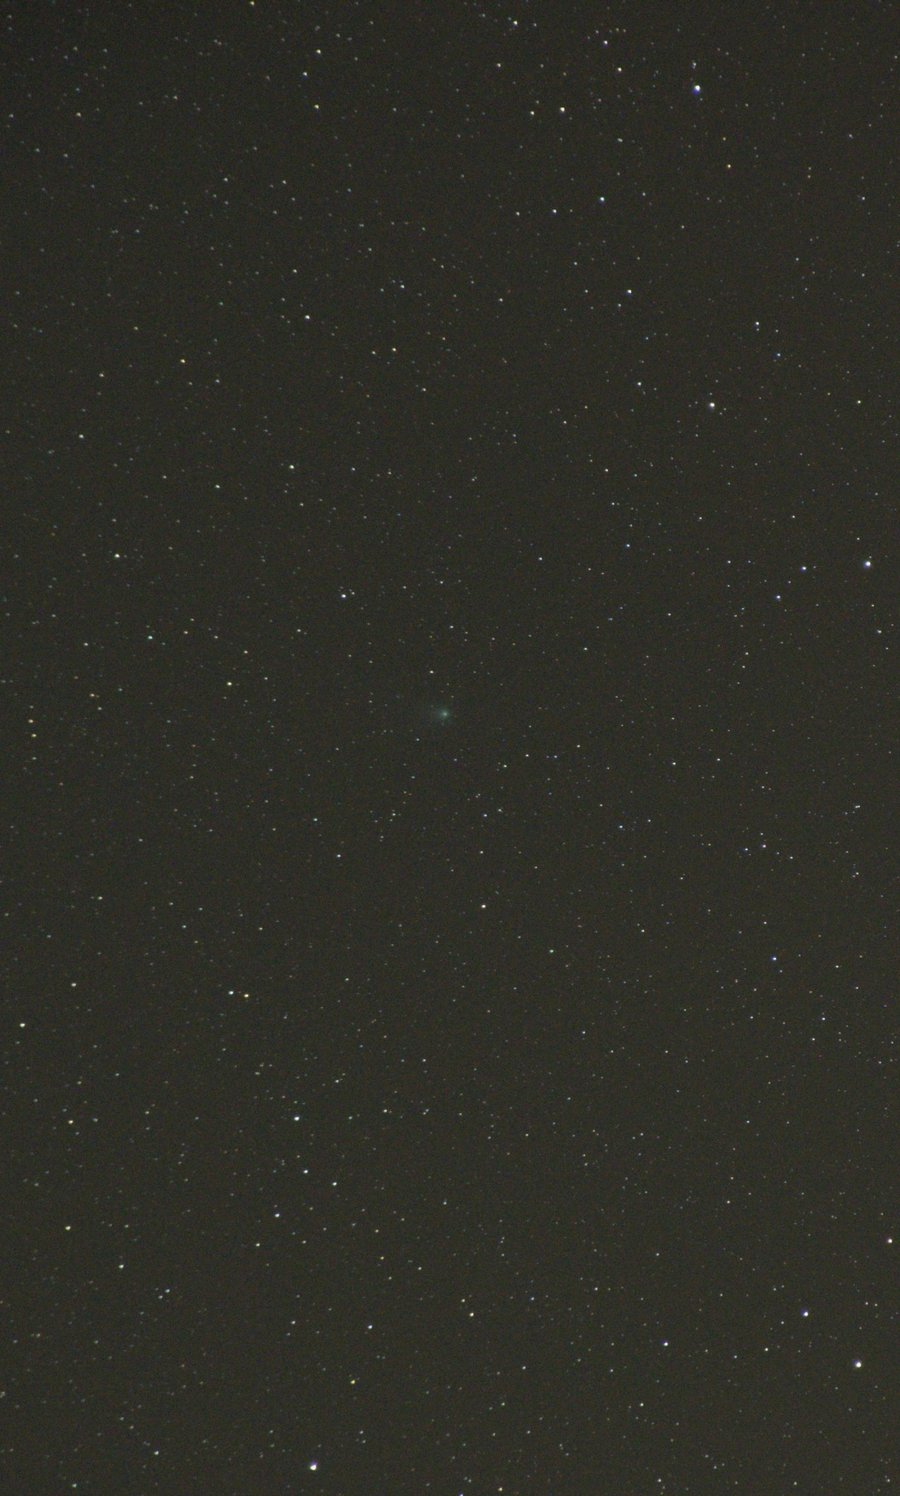 Comet C/2009P1 Garradd